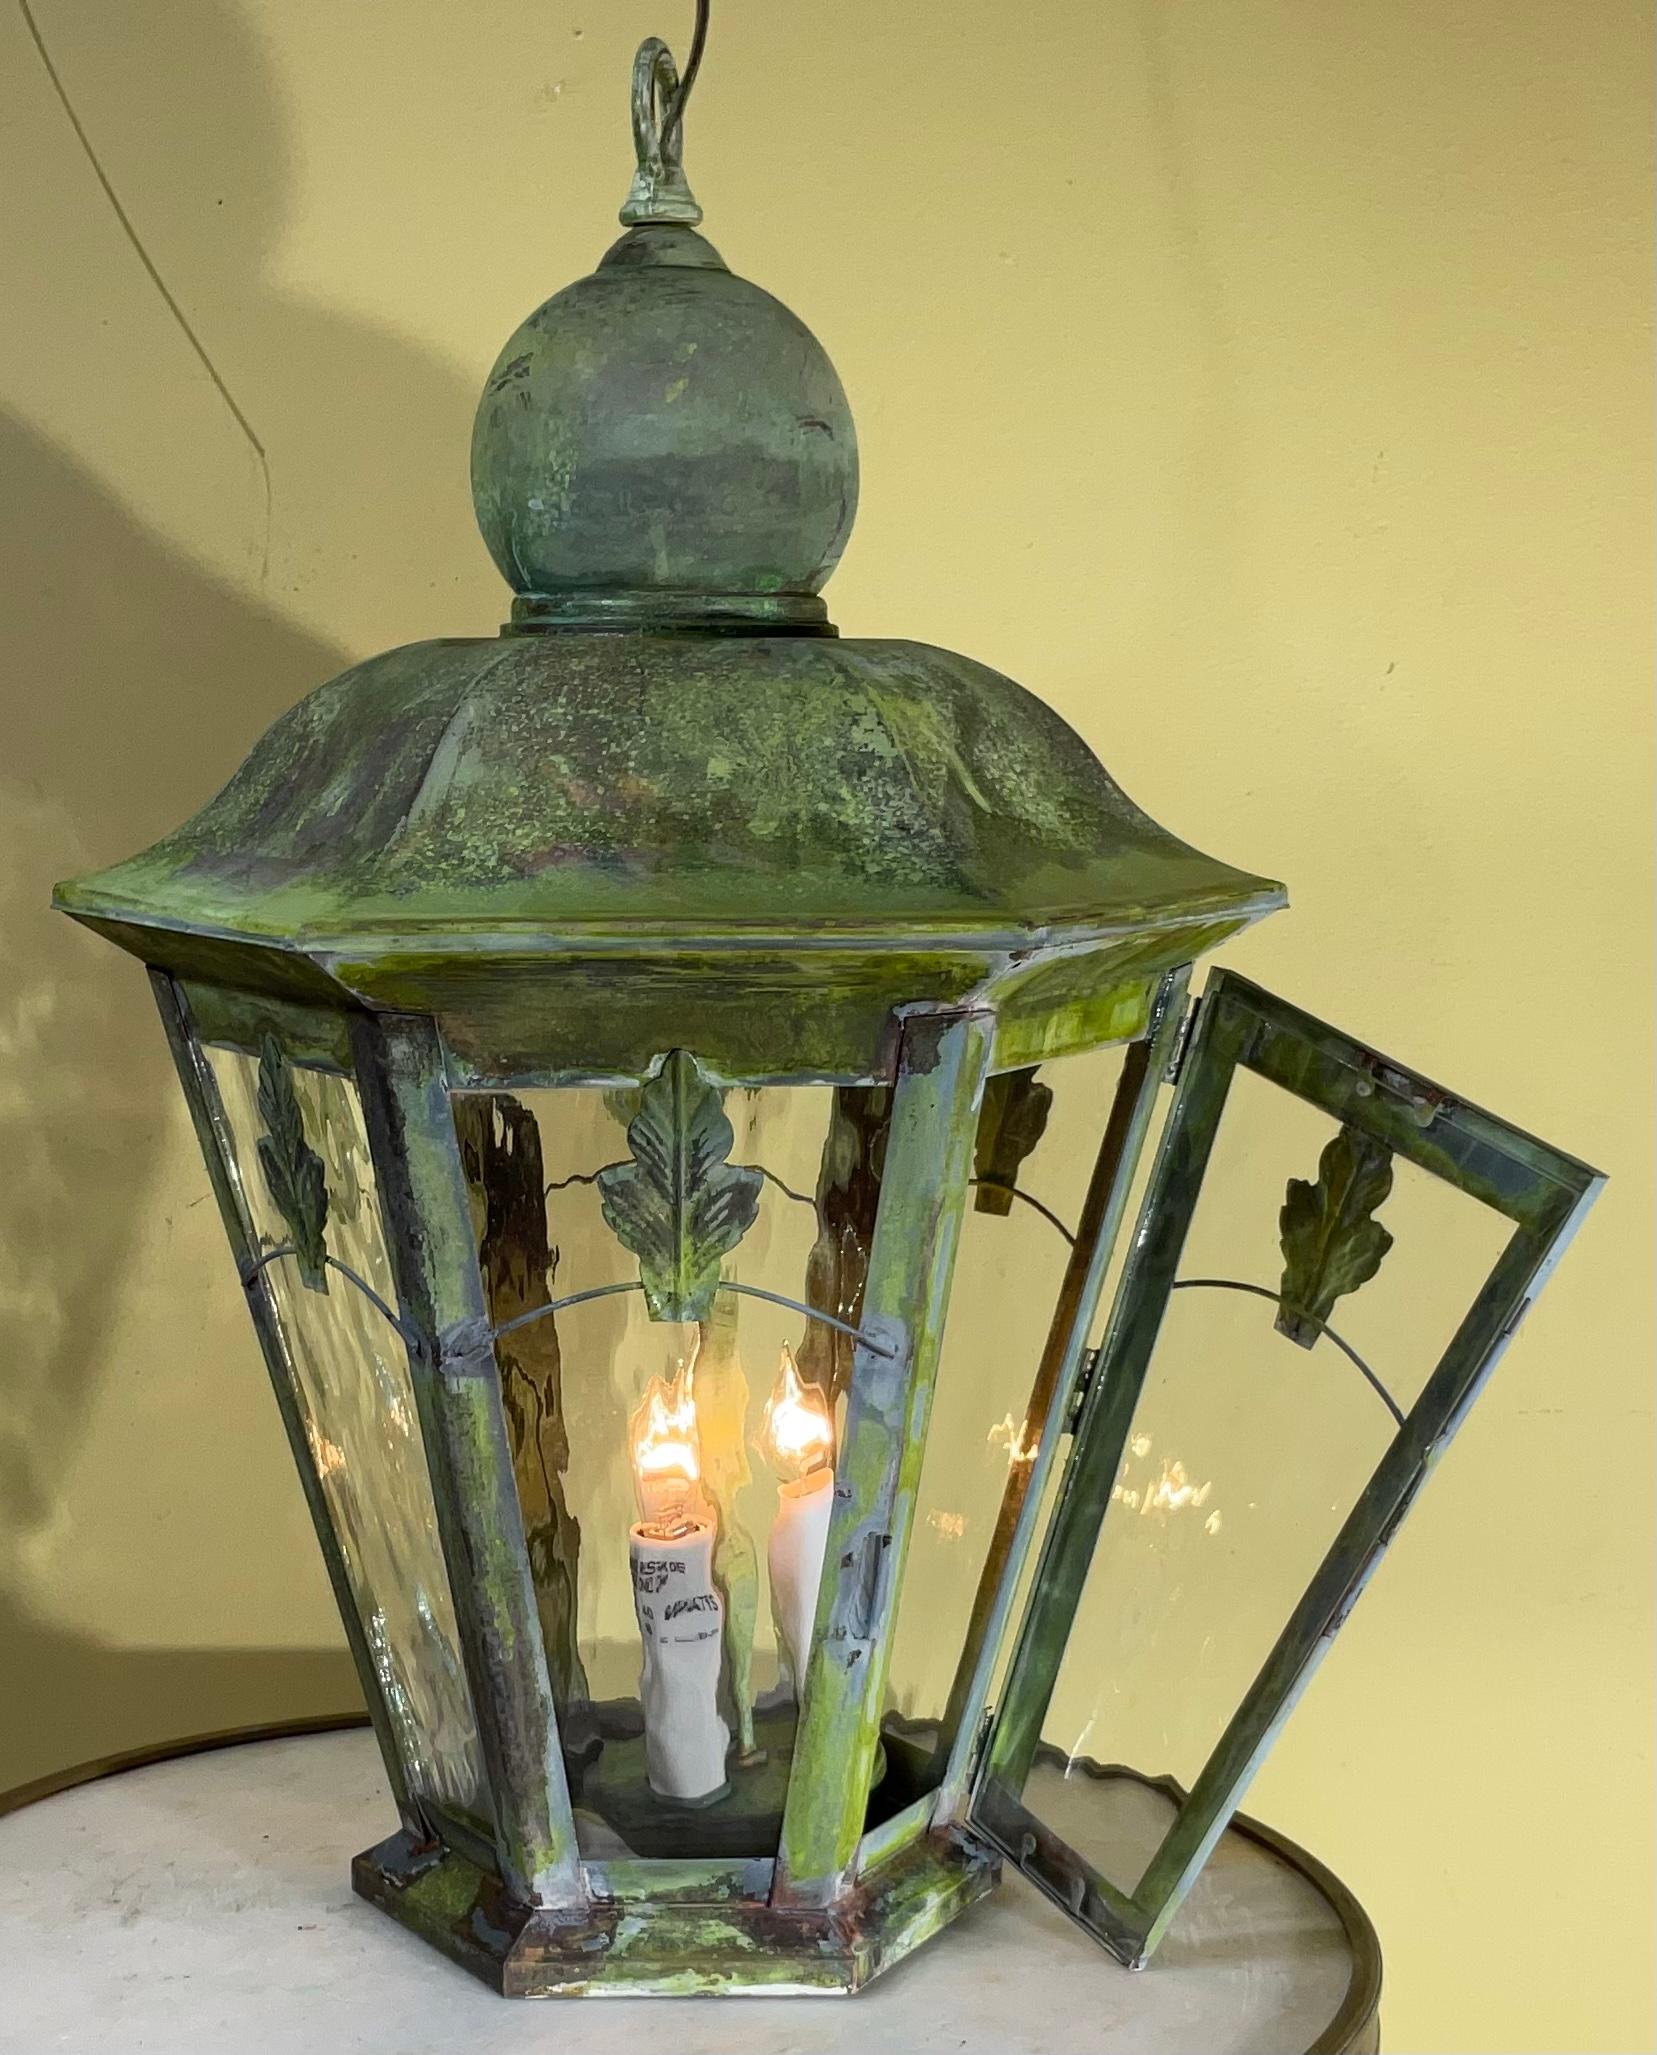 Lanterne en laiton massif fabriquée artistiquement à la main avec trois 40/watt.  Léger chacun, avec une belle patine. A l'origine, la lanterne murale a été transformée en lanterne suspendue, le câblage a été refait. Canopée incluse .
Superbe lampe